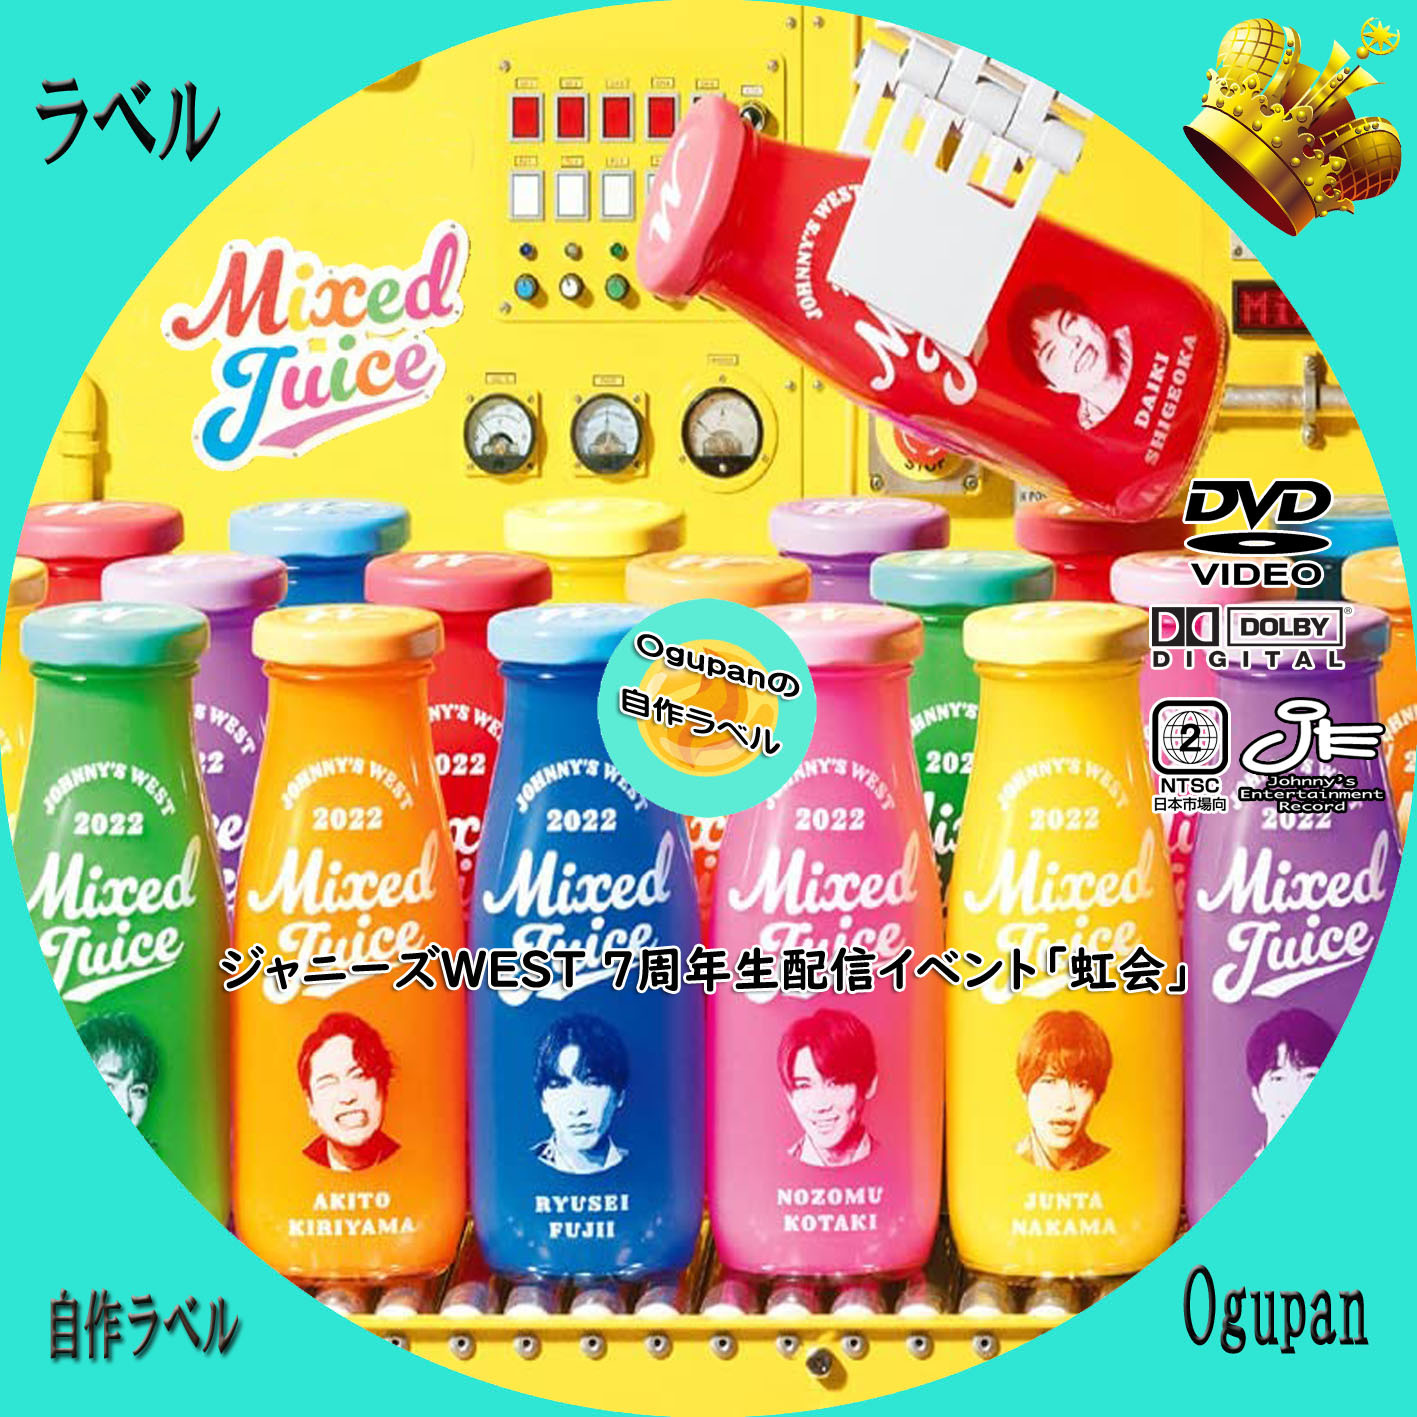 ジャニーズWEST Mixed Juice 神山智洋 キャップ - アイドル